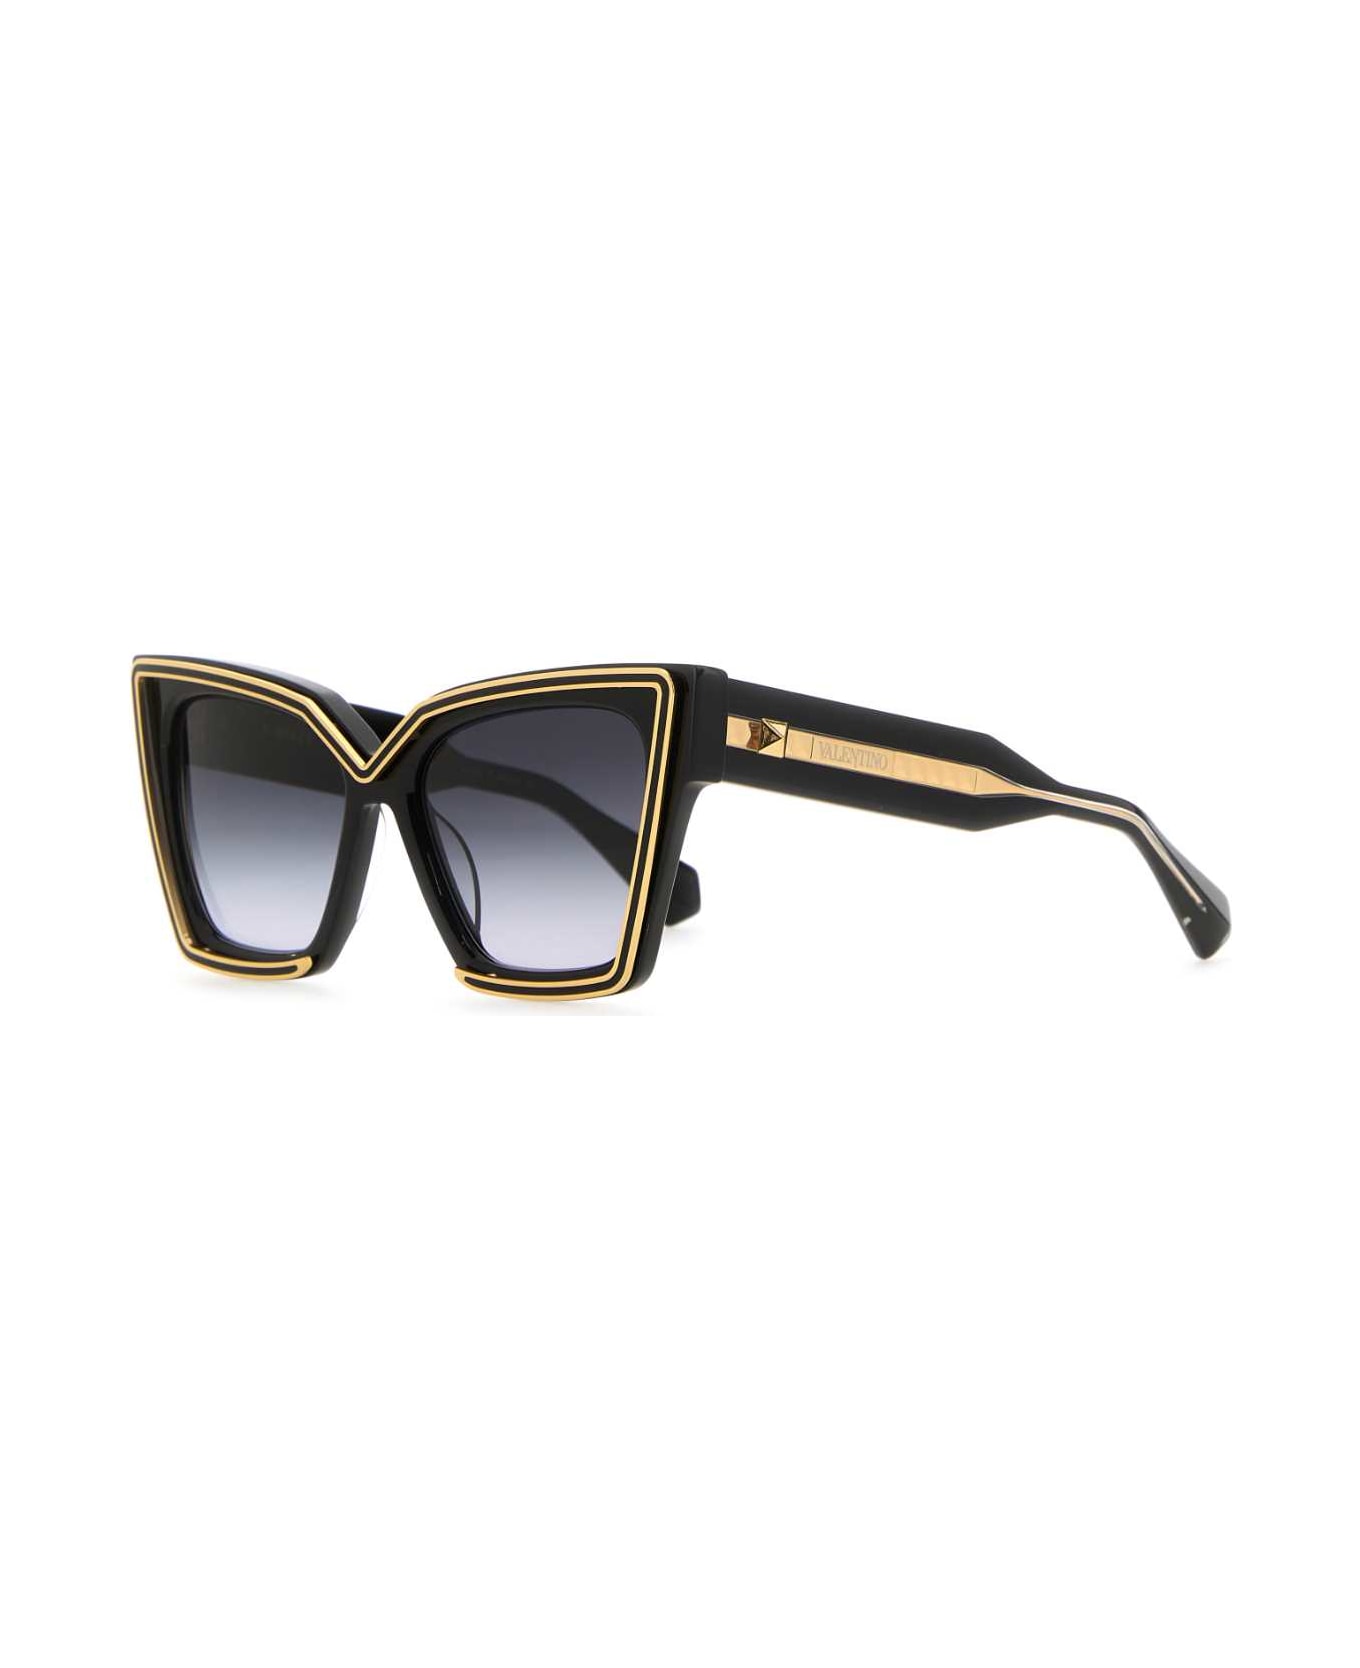 Valentino Garavani Black Acetate V-grace Sunglasses - BLKGLD サングラス